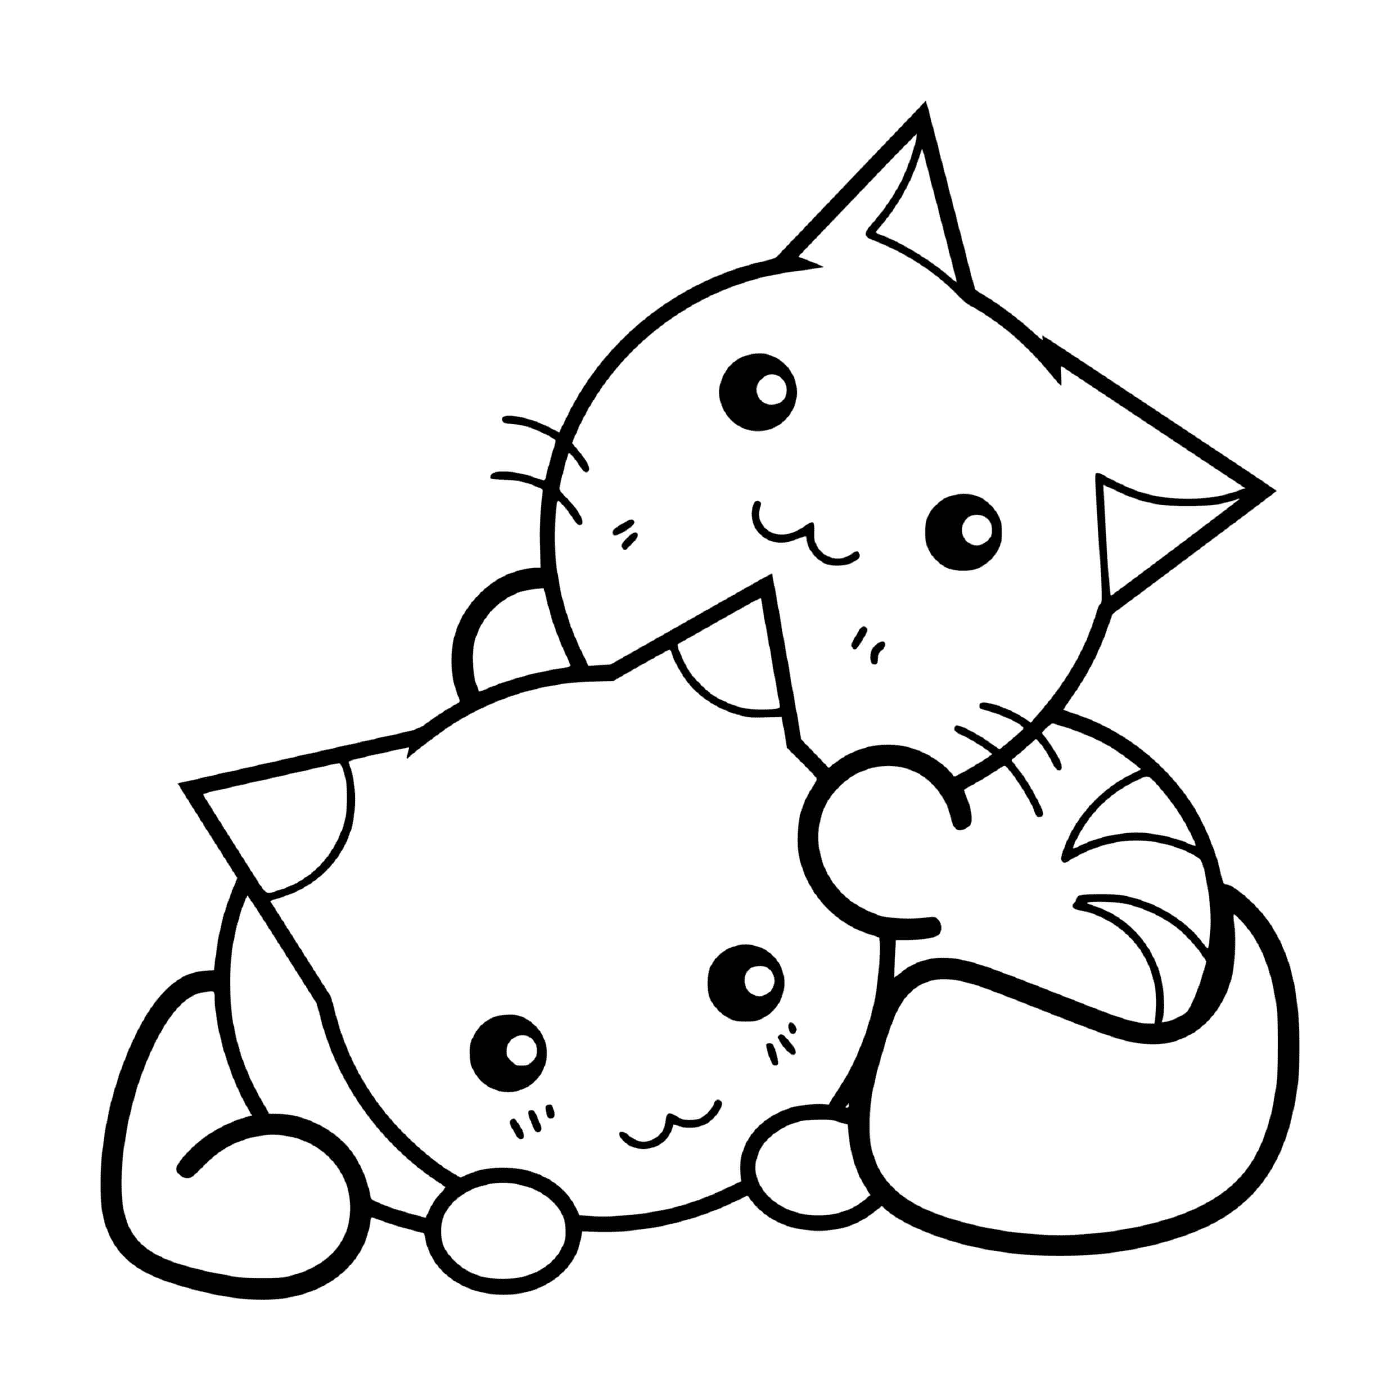  可爱的猫猫 互相拥抱的猫猫 